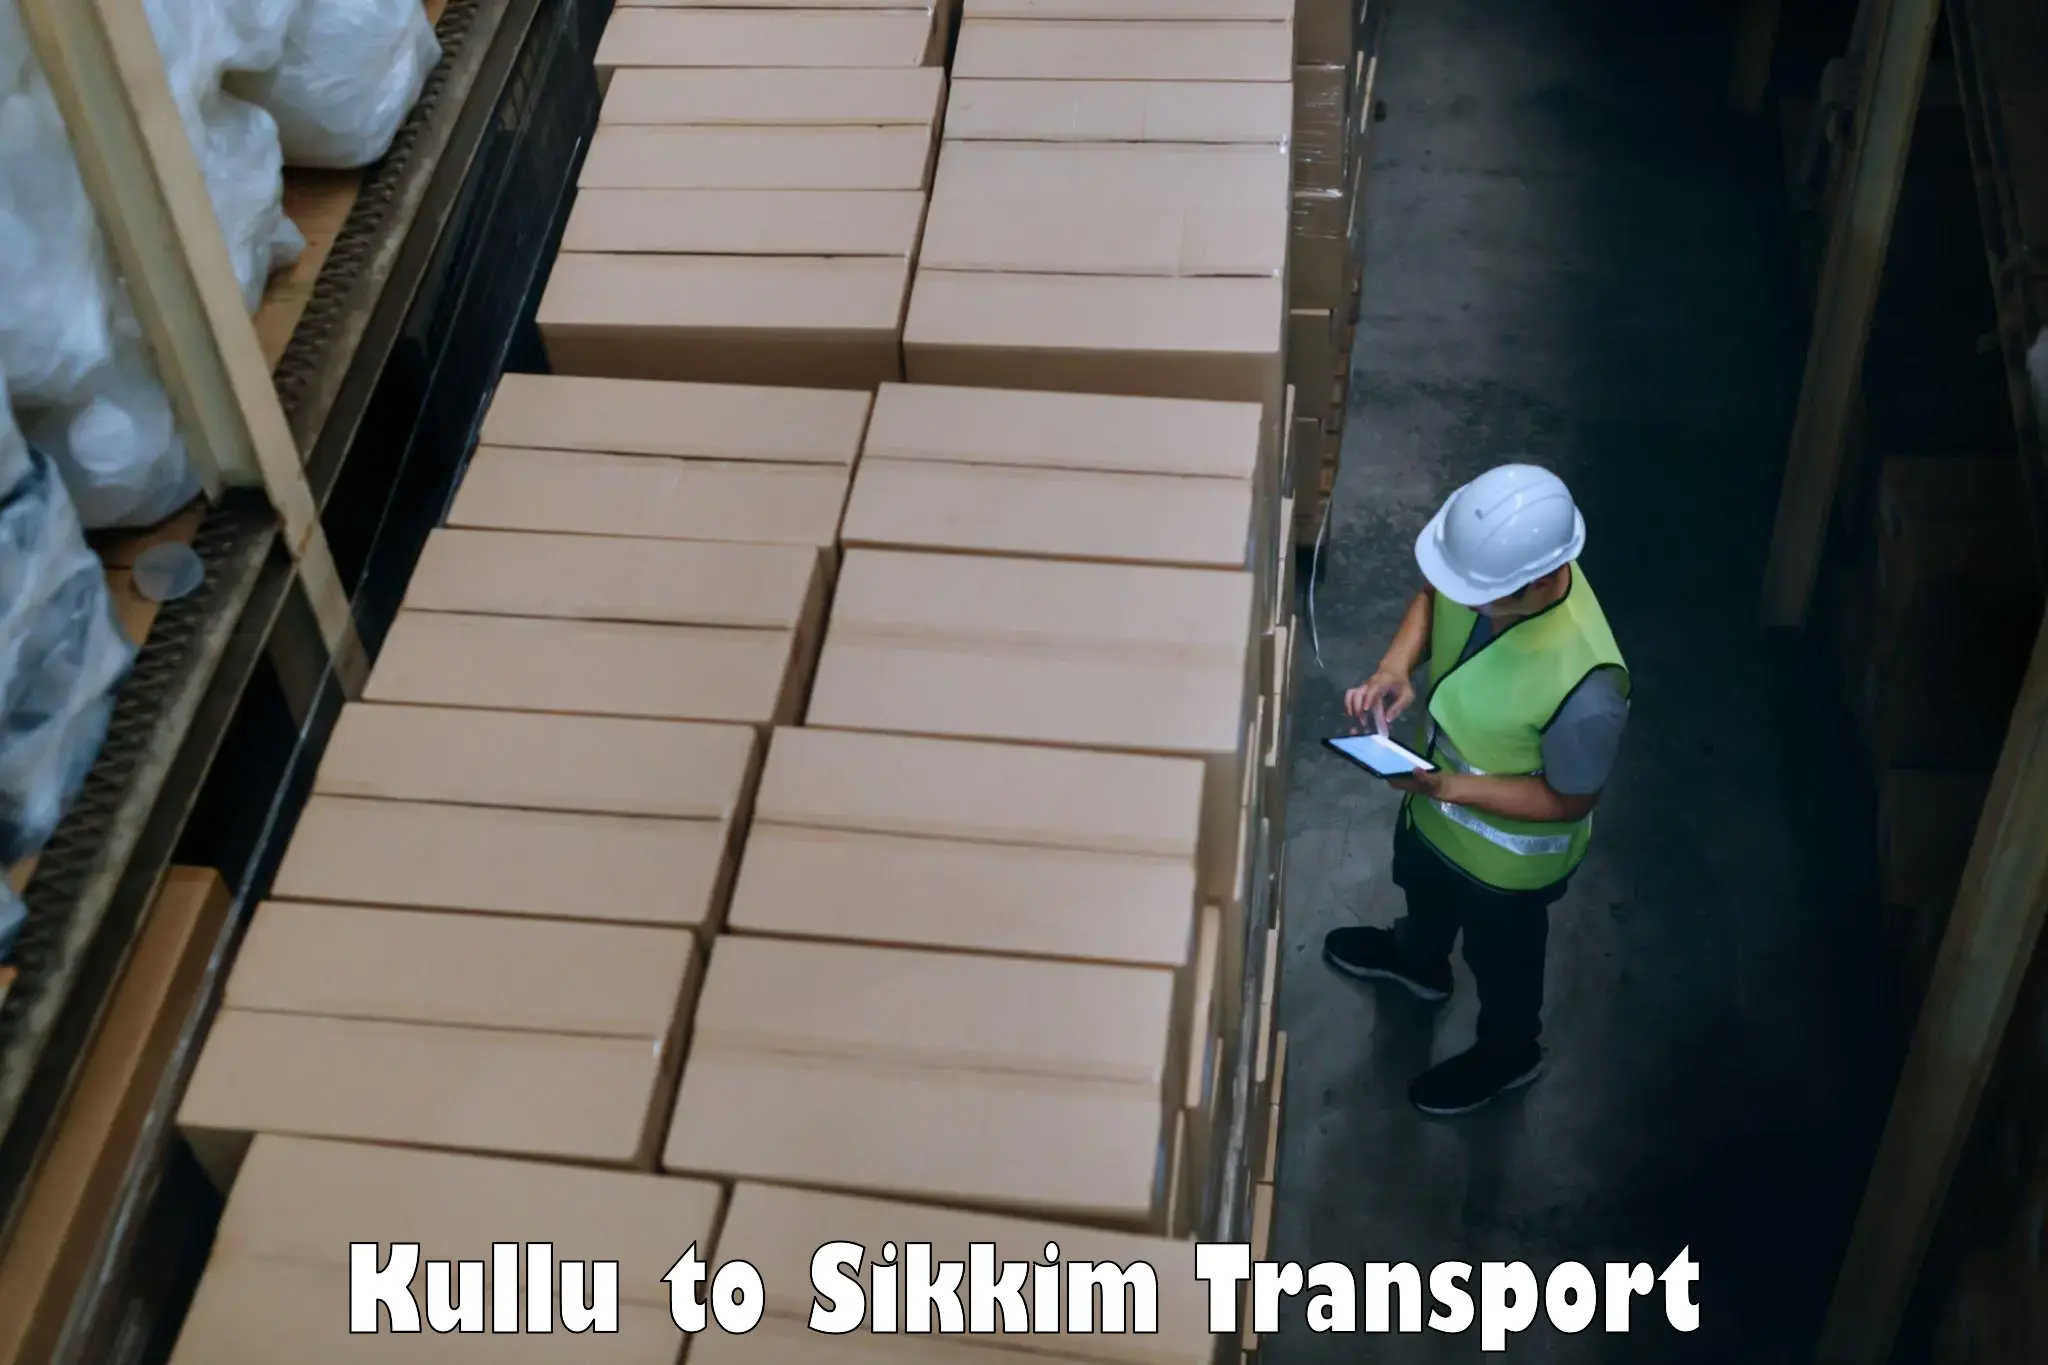 Furniture transport service Kullu to Geyzing